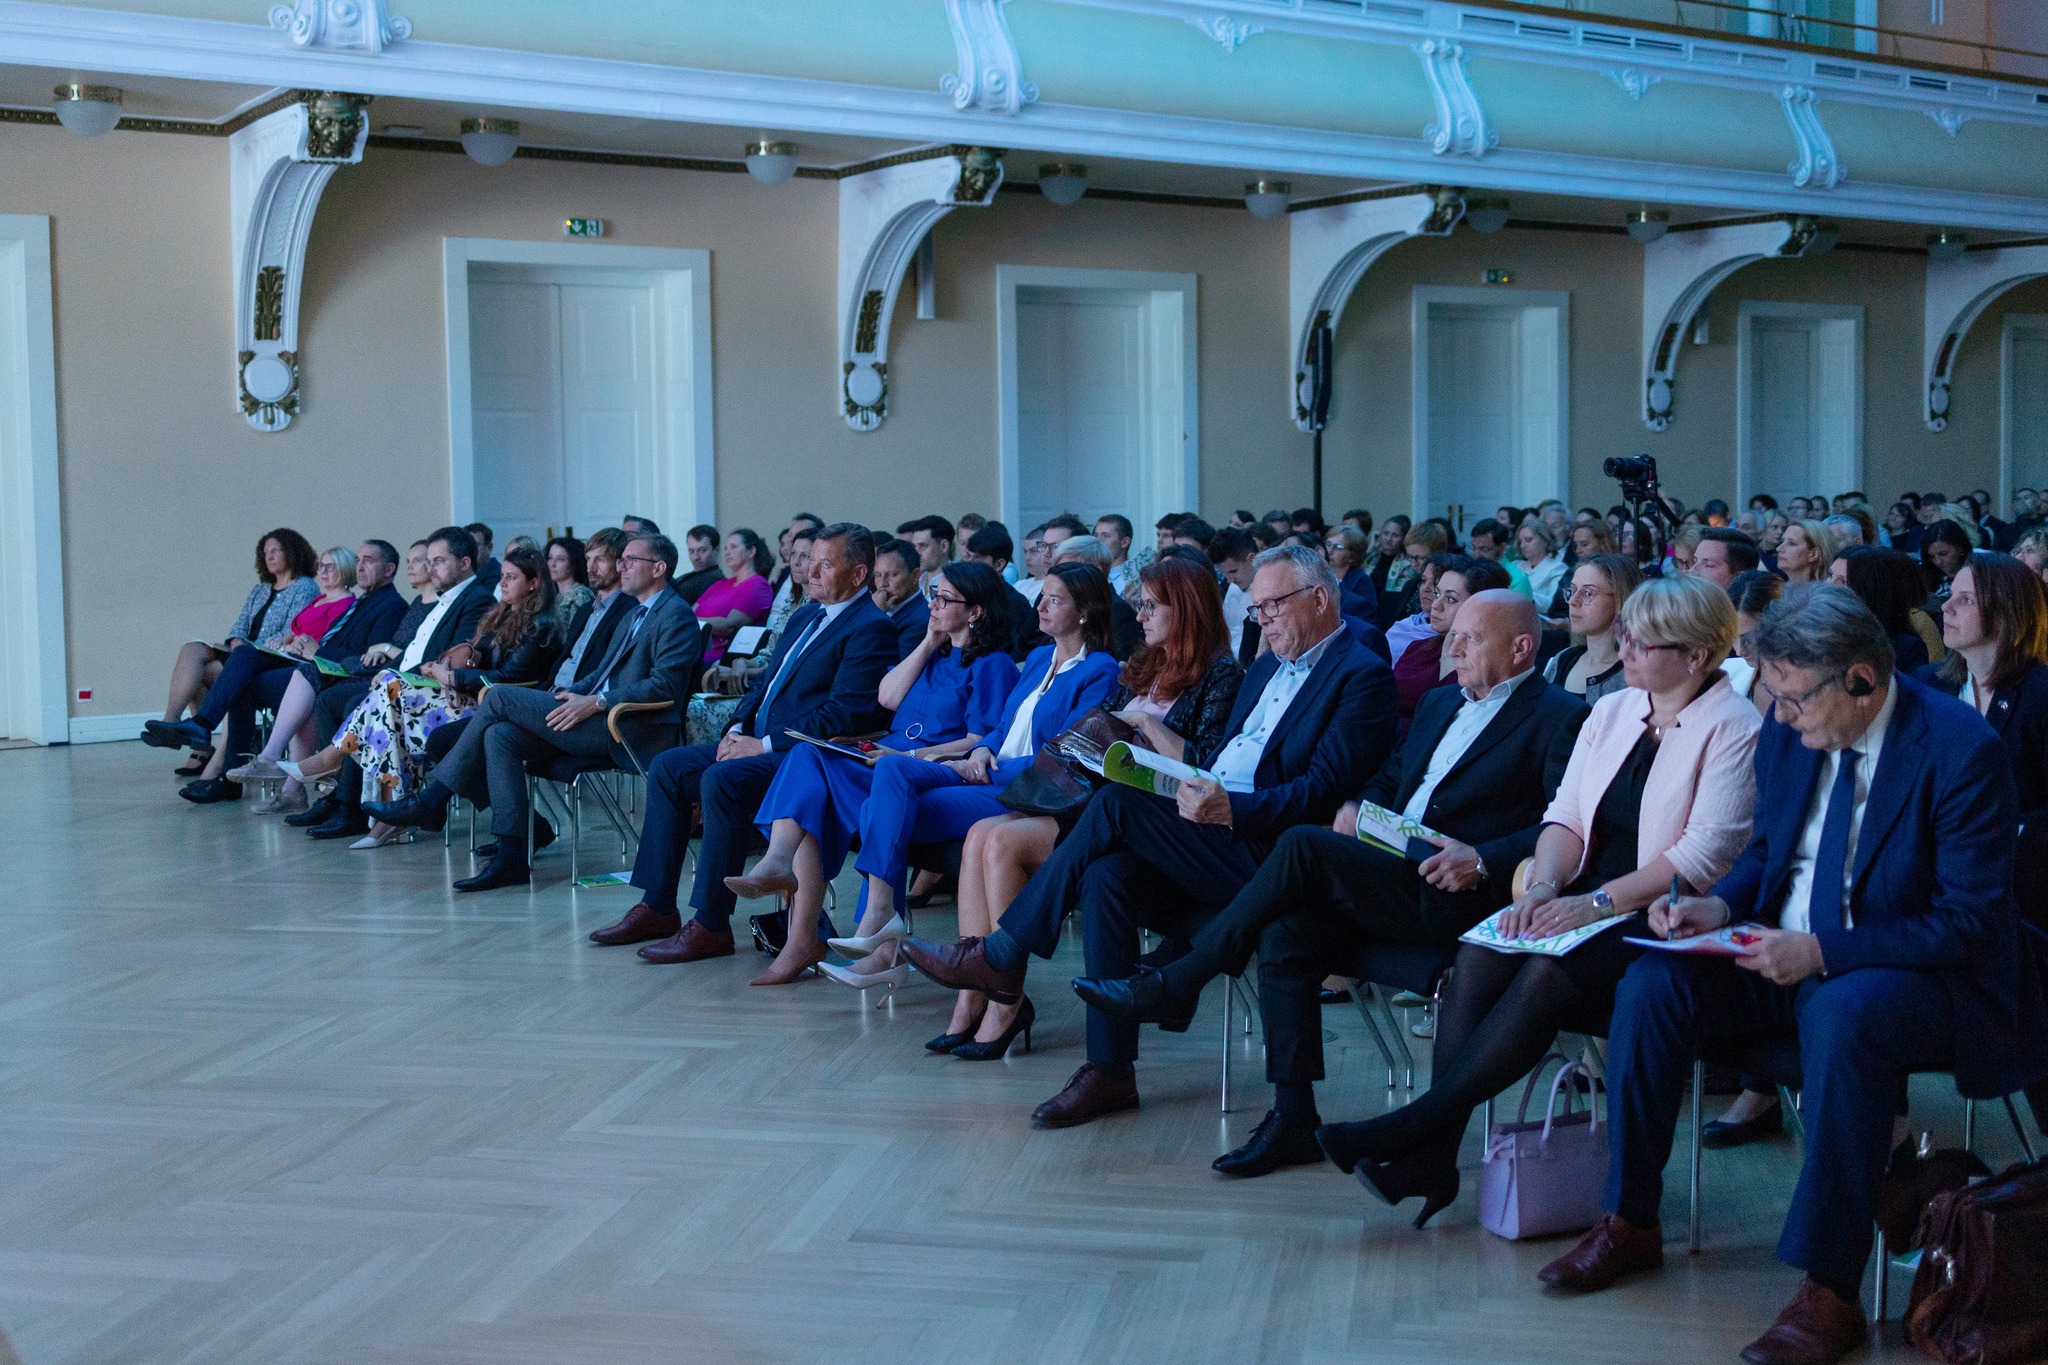 Udeleženci slovesnosti ob zaključku izvajanja evropske kohezijske politike 2014-2020 v Sloveniji. V prvi vrsti sedijo visoki predstavniki Evropske komisije, ministri in državni sekretarji.